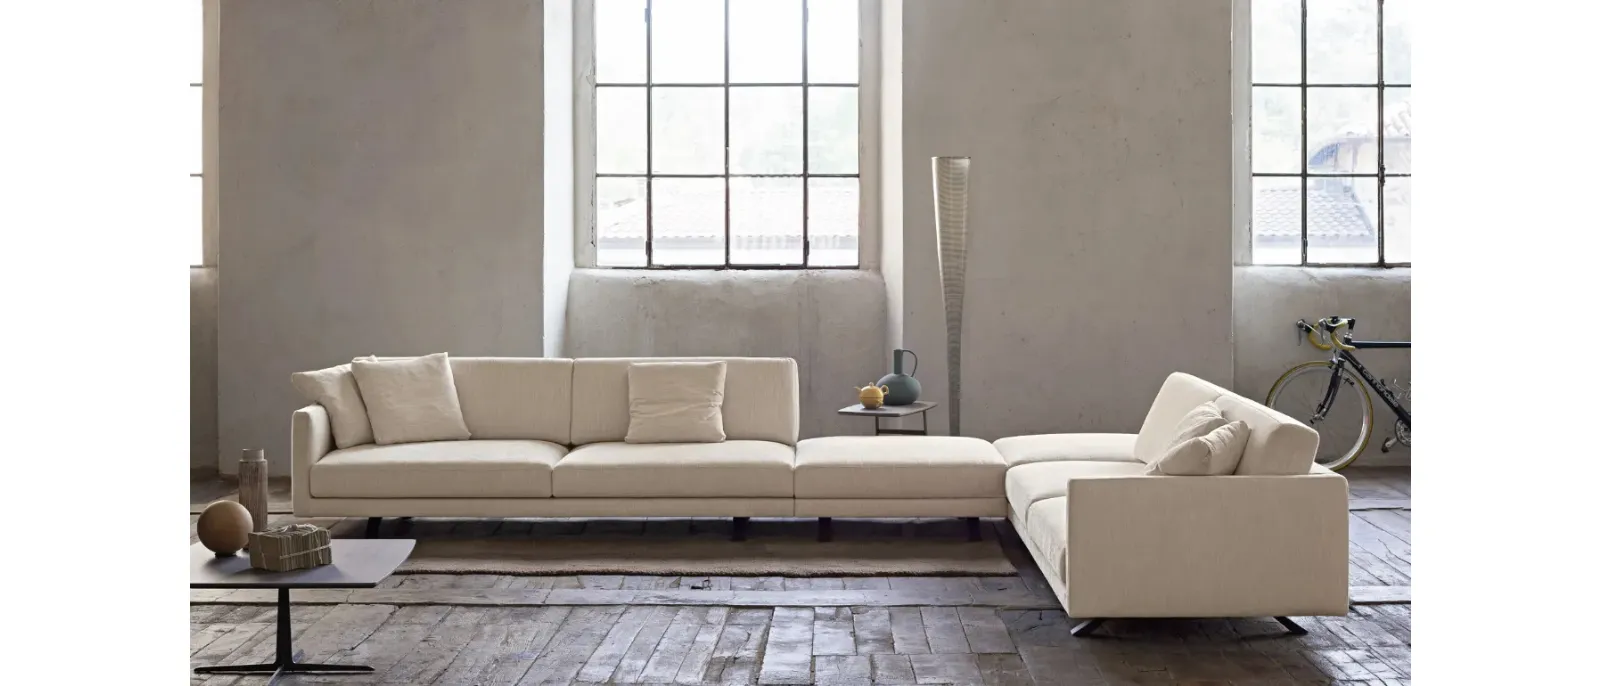 Corner sofa in Bart fabric by Doimo Salotti.